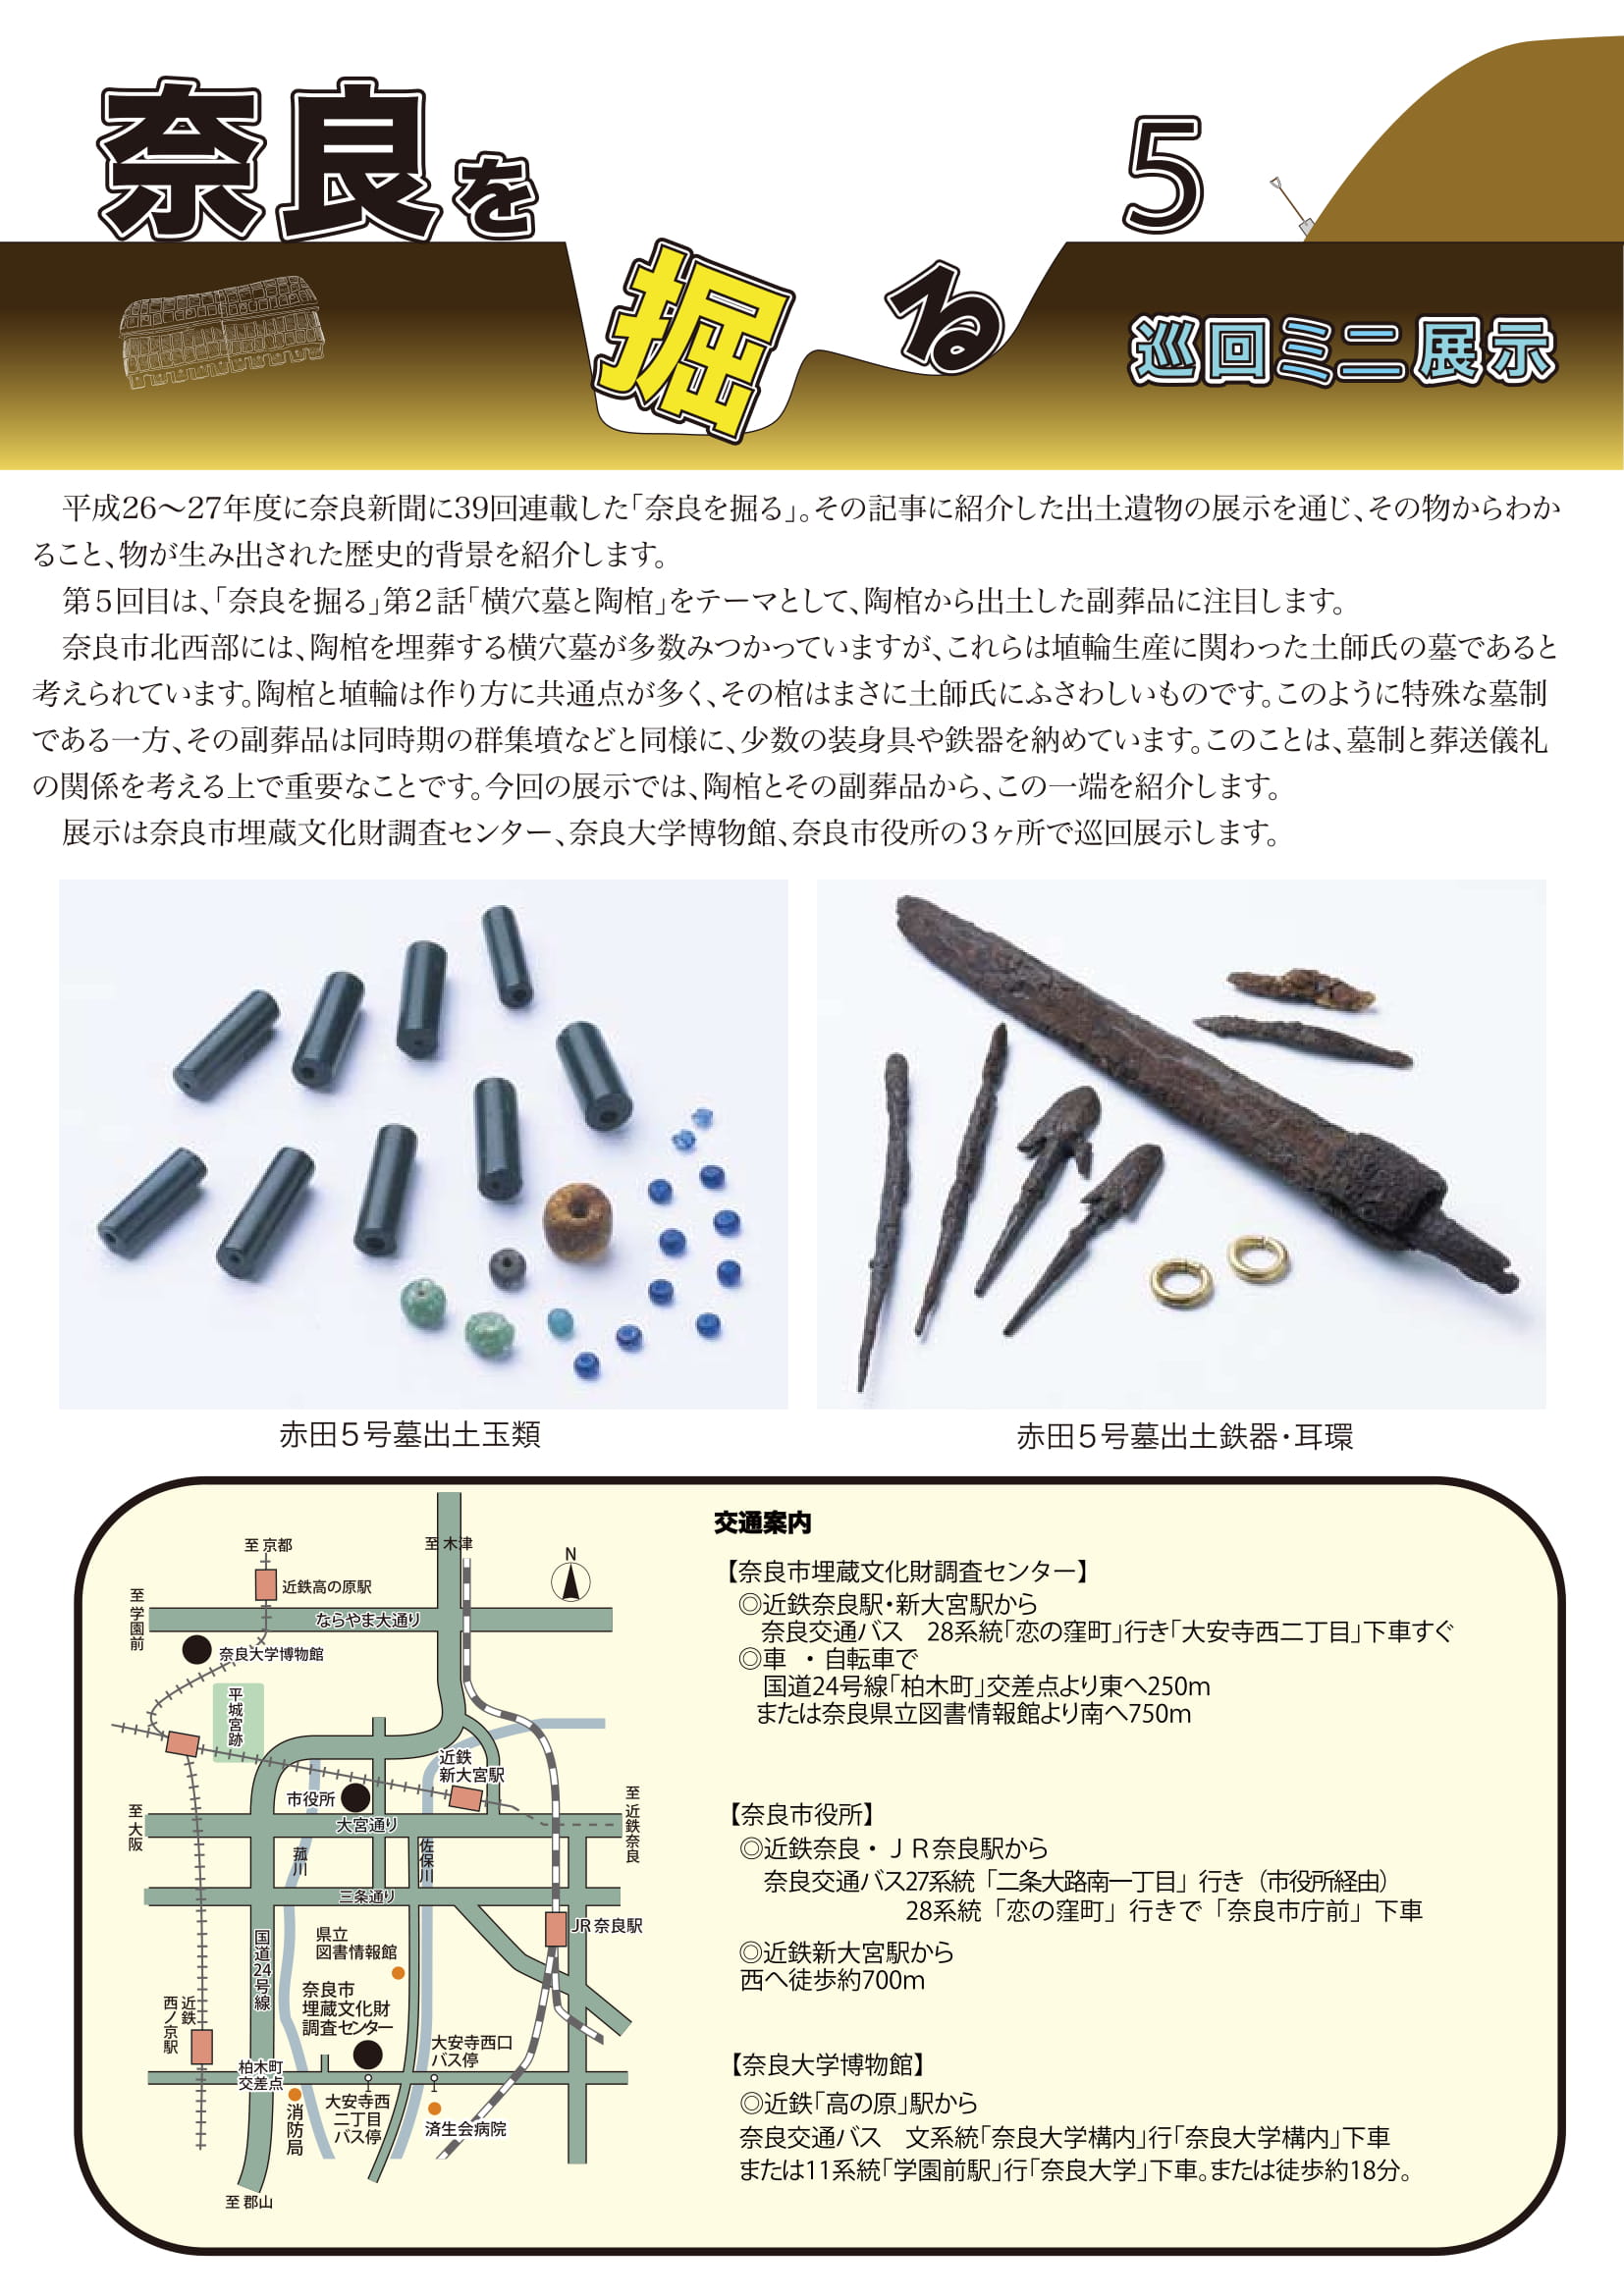 平成30年度巡回ミニ展示「奈良を掘る5」の開催について(平成30年5月21日発表)の画像2